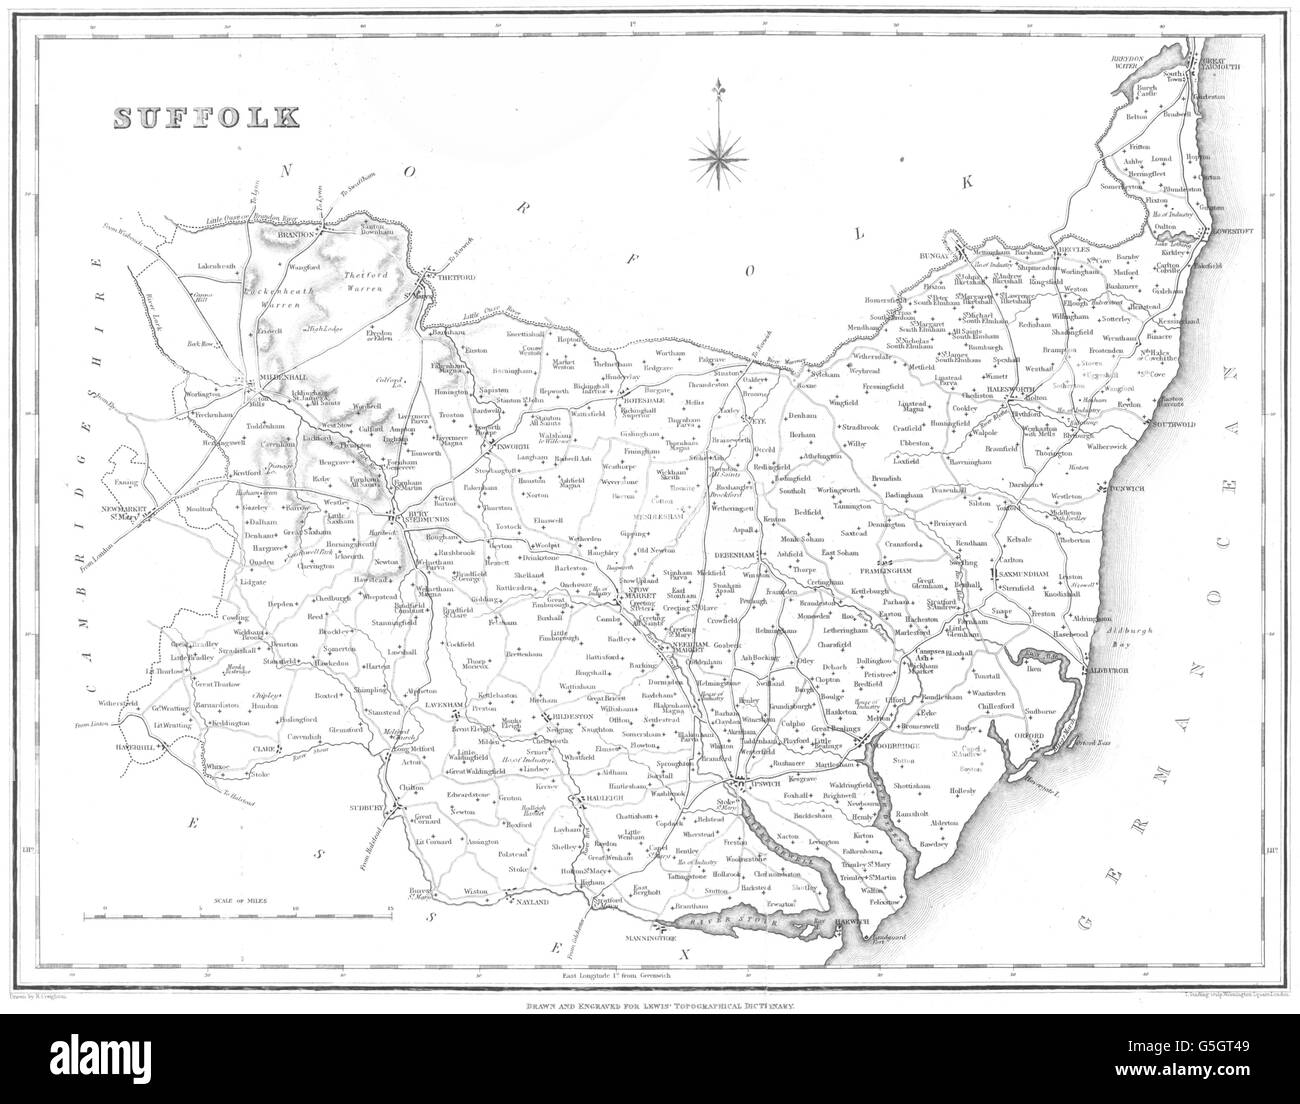 SUFFOLK: Suffolk: Lewis, 1844 antique map Stock Photo